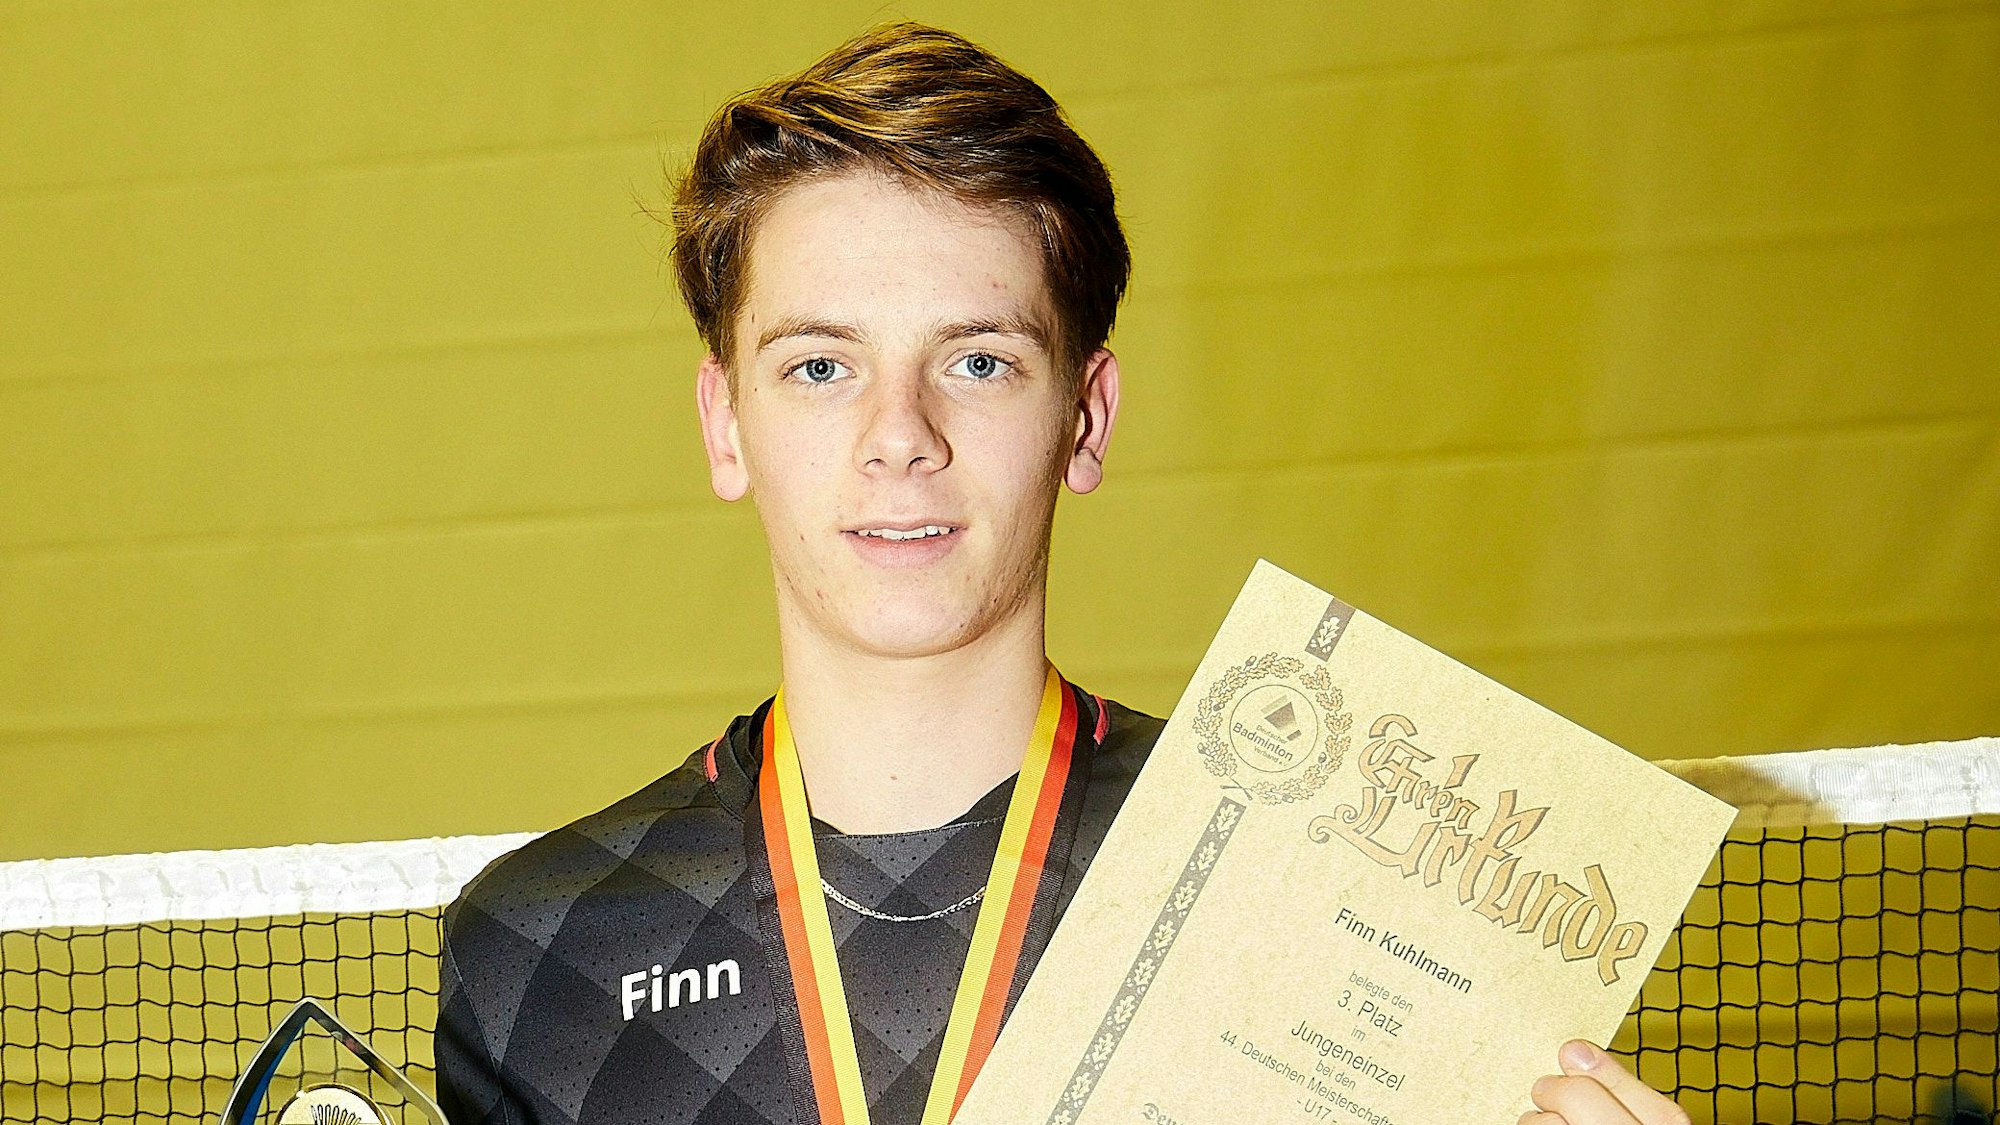 Finn posiert mit einer Urkunde und einem Pokal (der Deutschen Meisterschaften im Badminton). Er lächelt in die Kamera.